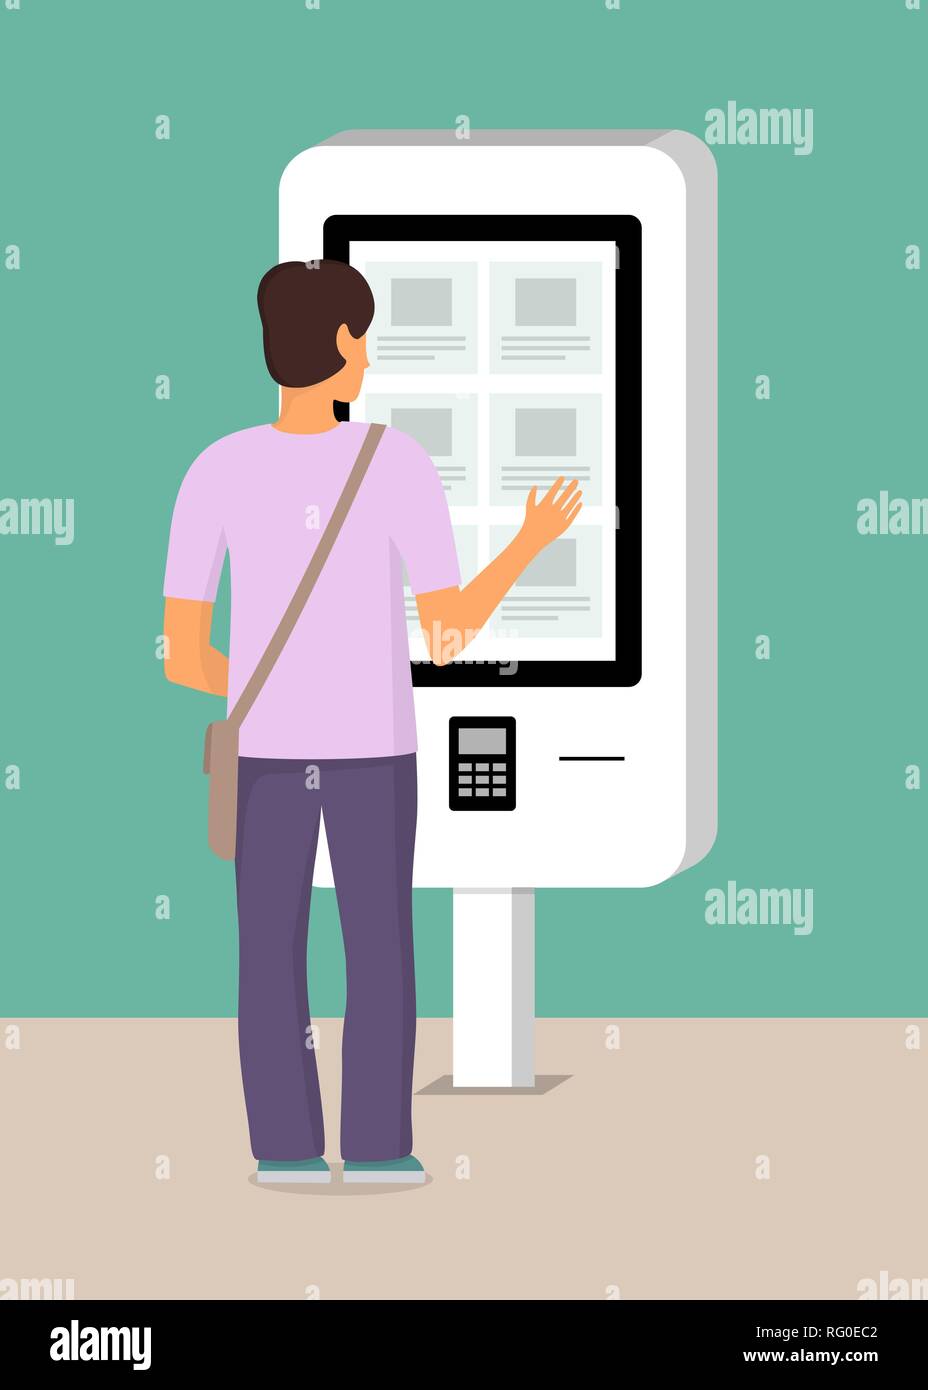 L'homme en utilisant le libre-service de paiement et d'information terminal électronique avec écran tactile. Vector illustration style de télévision Illustration de Vecteur